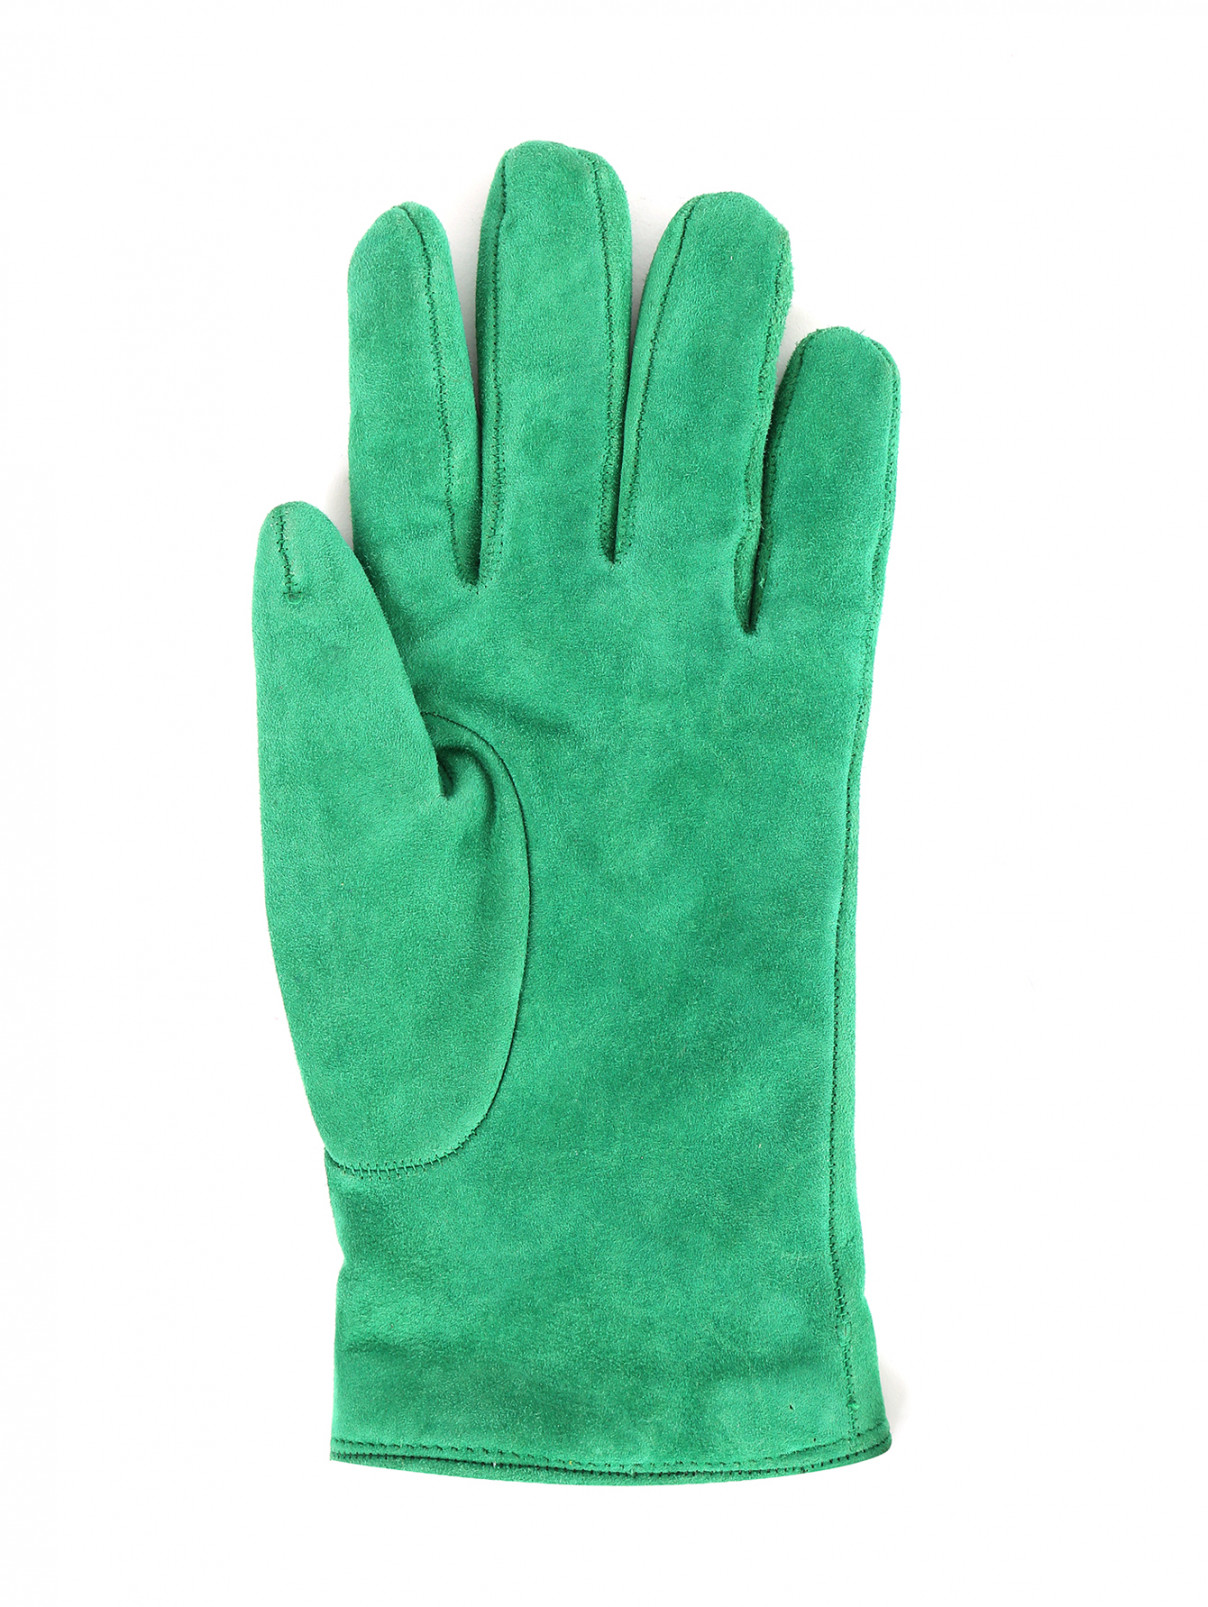 Перчатки из замши с бантиком MiMiSol  –  Обтравка1  – Цвет:  Зеленый